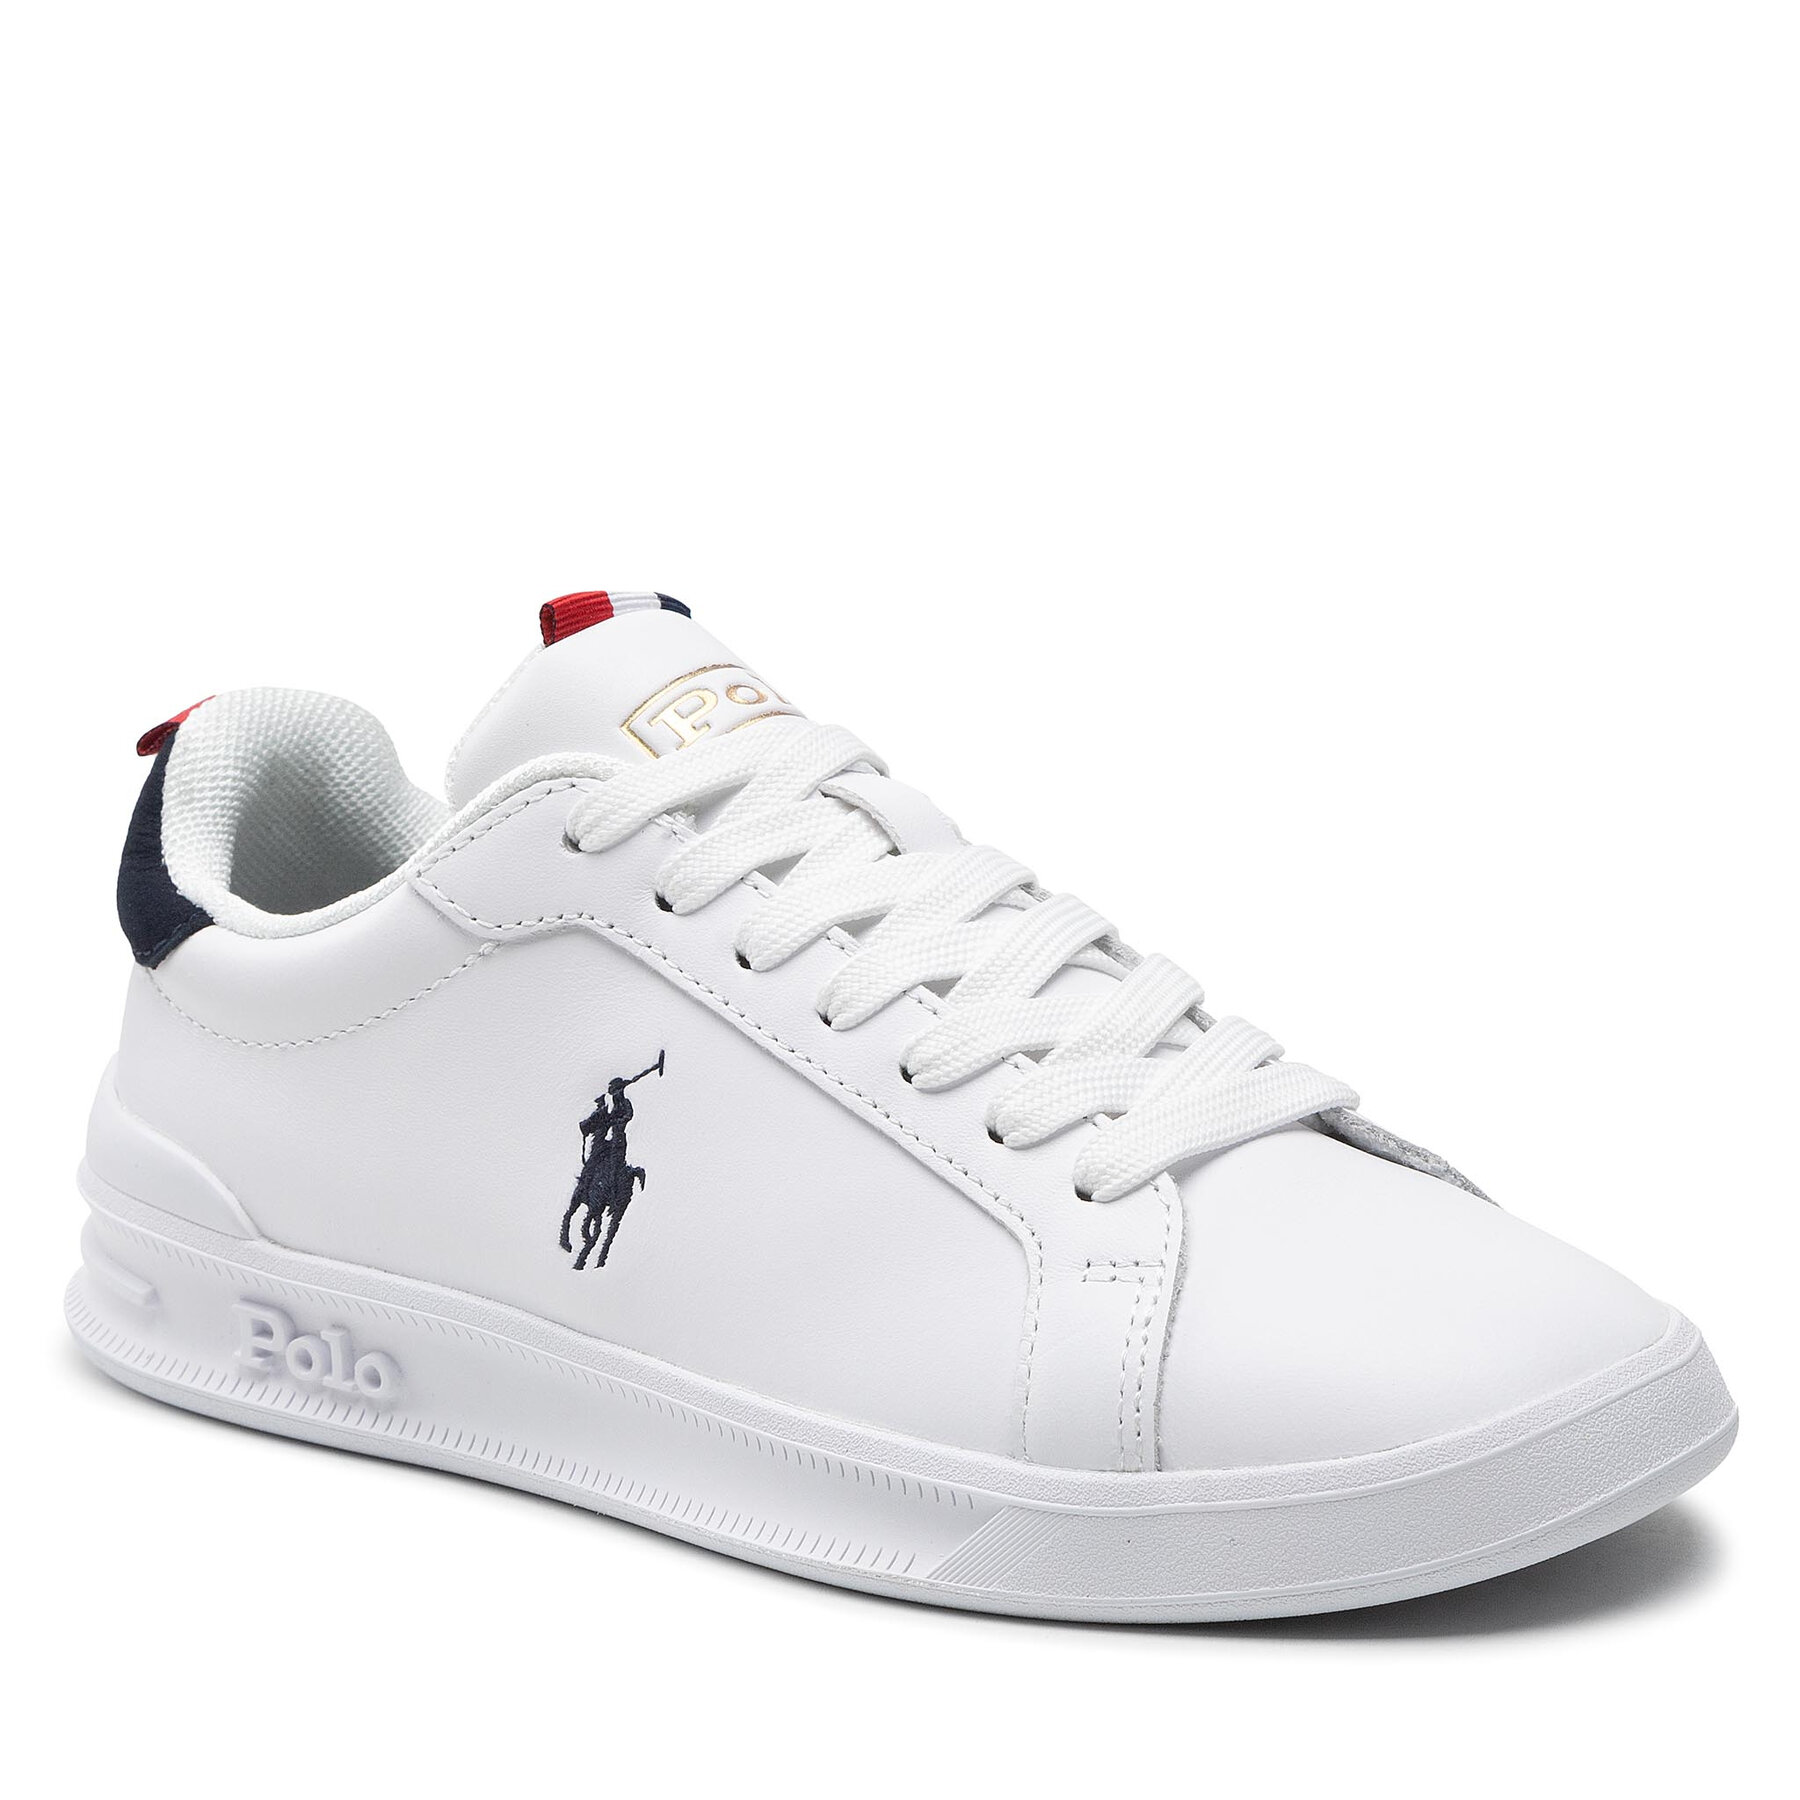 Sneakers Polo Ralph Lauren Hrt Ct II 809860883003 W/N/R